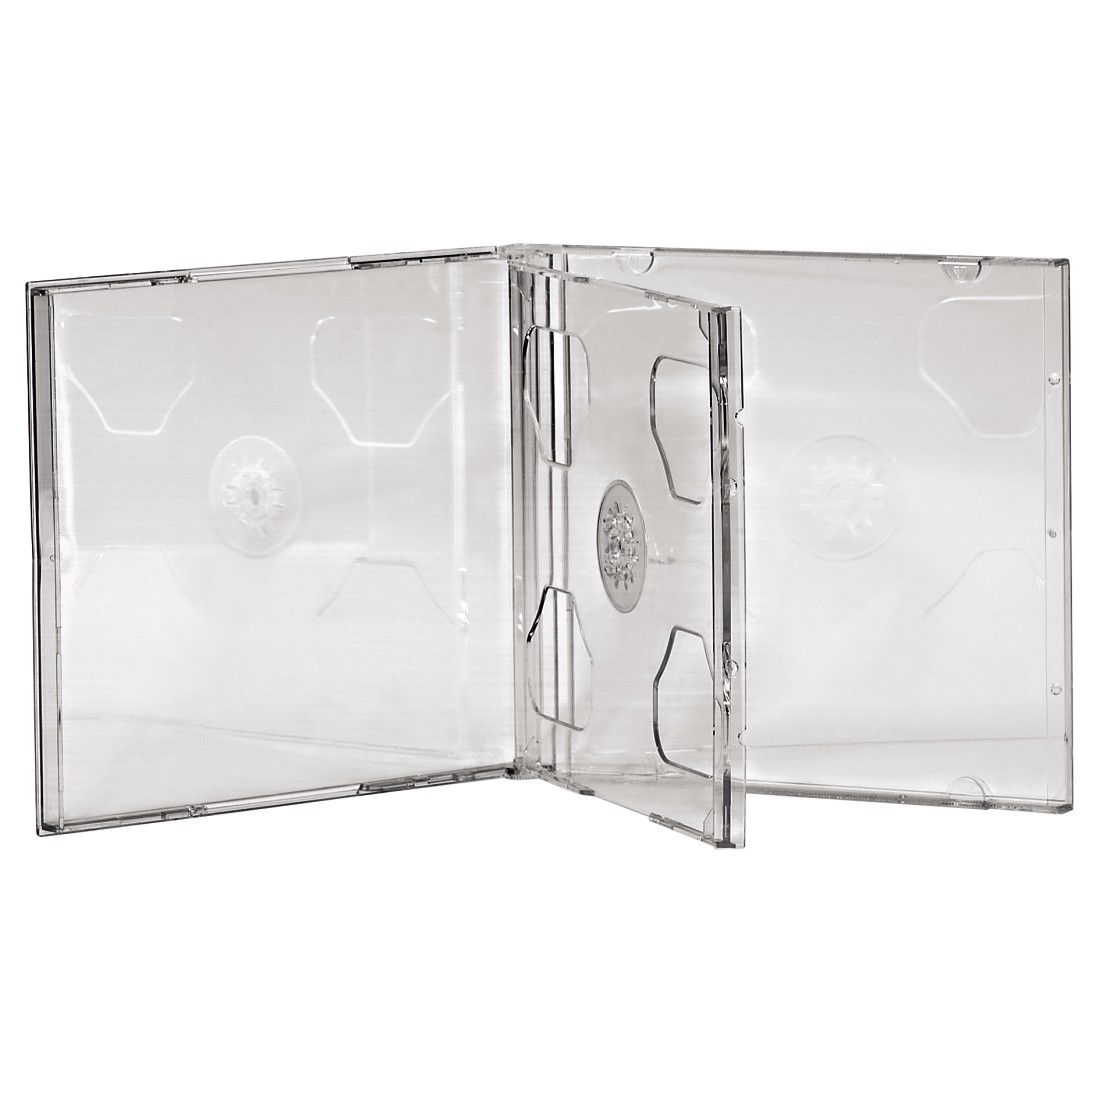 CD-Leerhüllen Transparent Standard HAMA